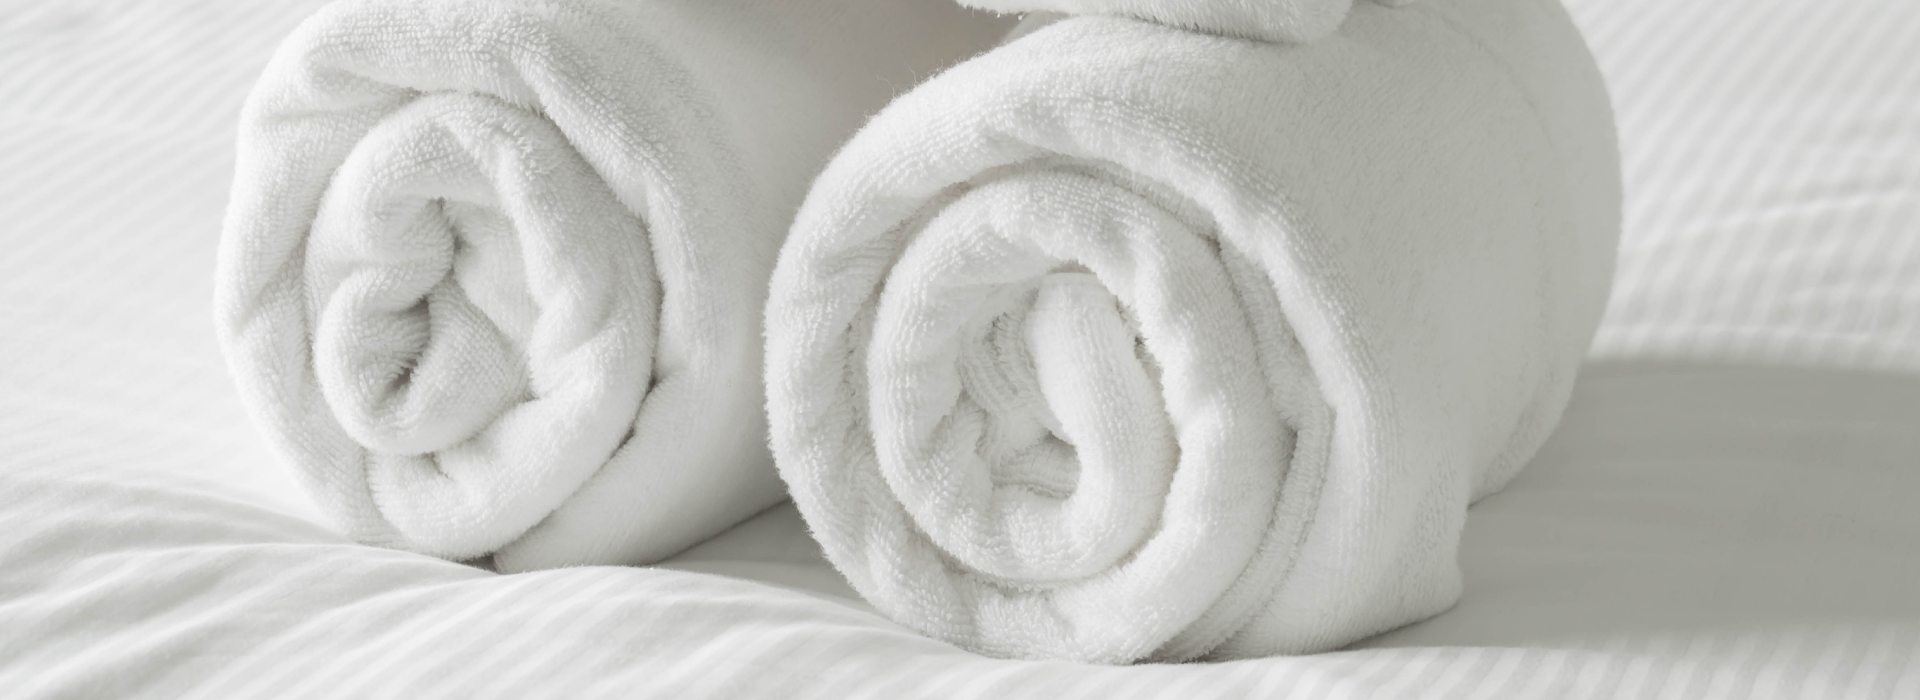 Полотенца для гостиниц - все, что вам нужно знать о них